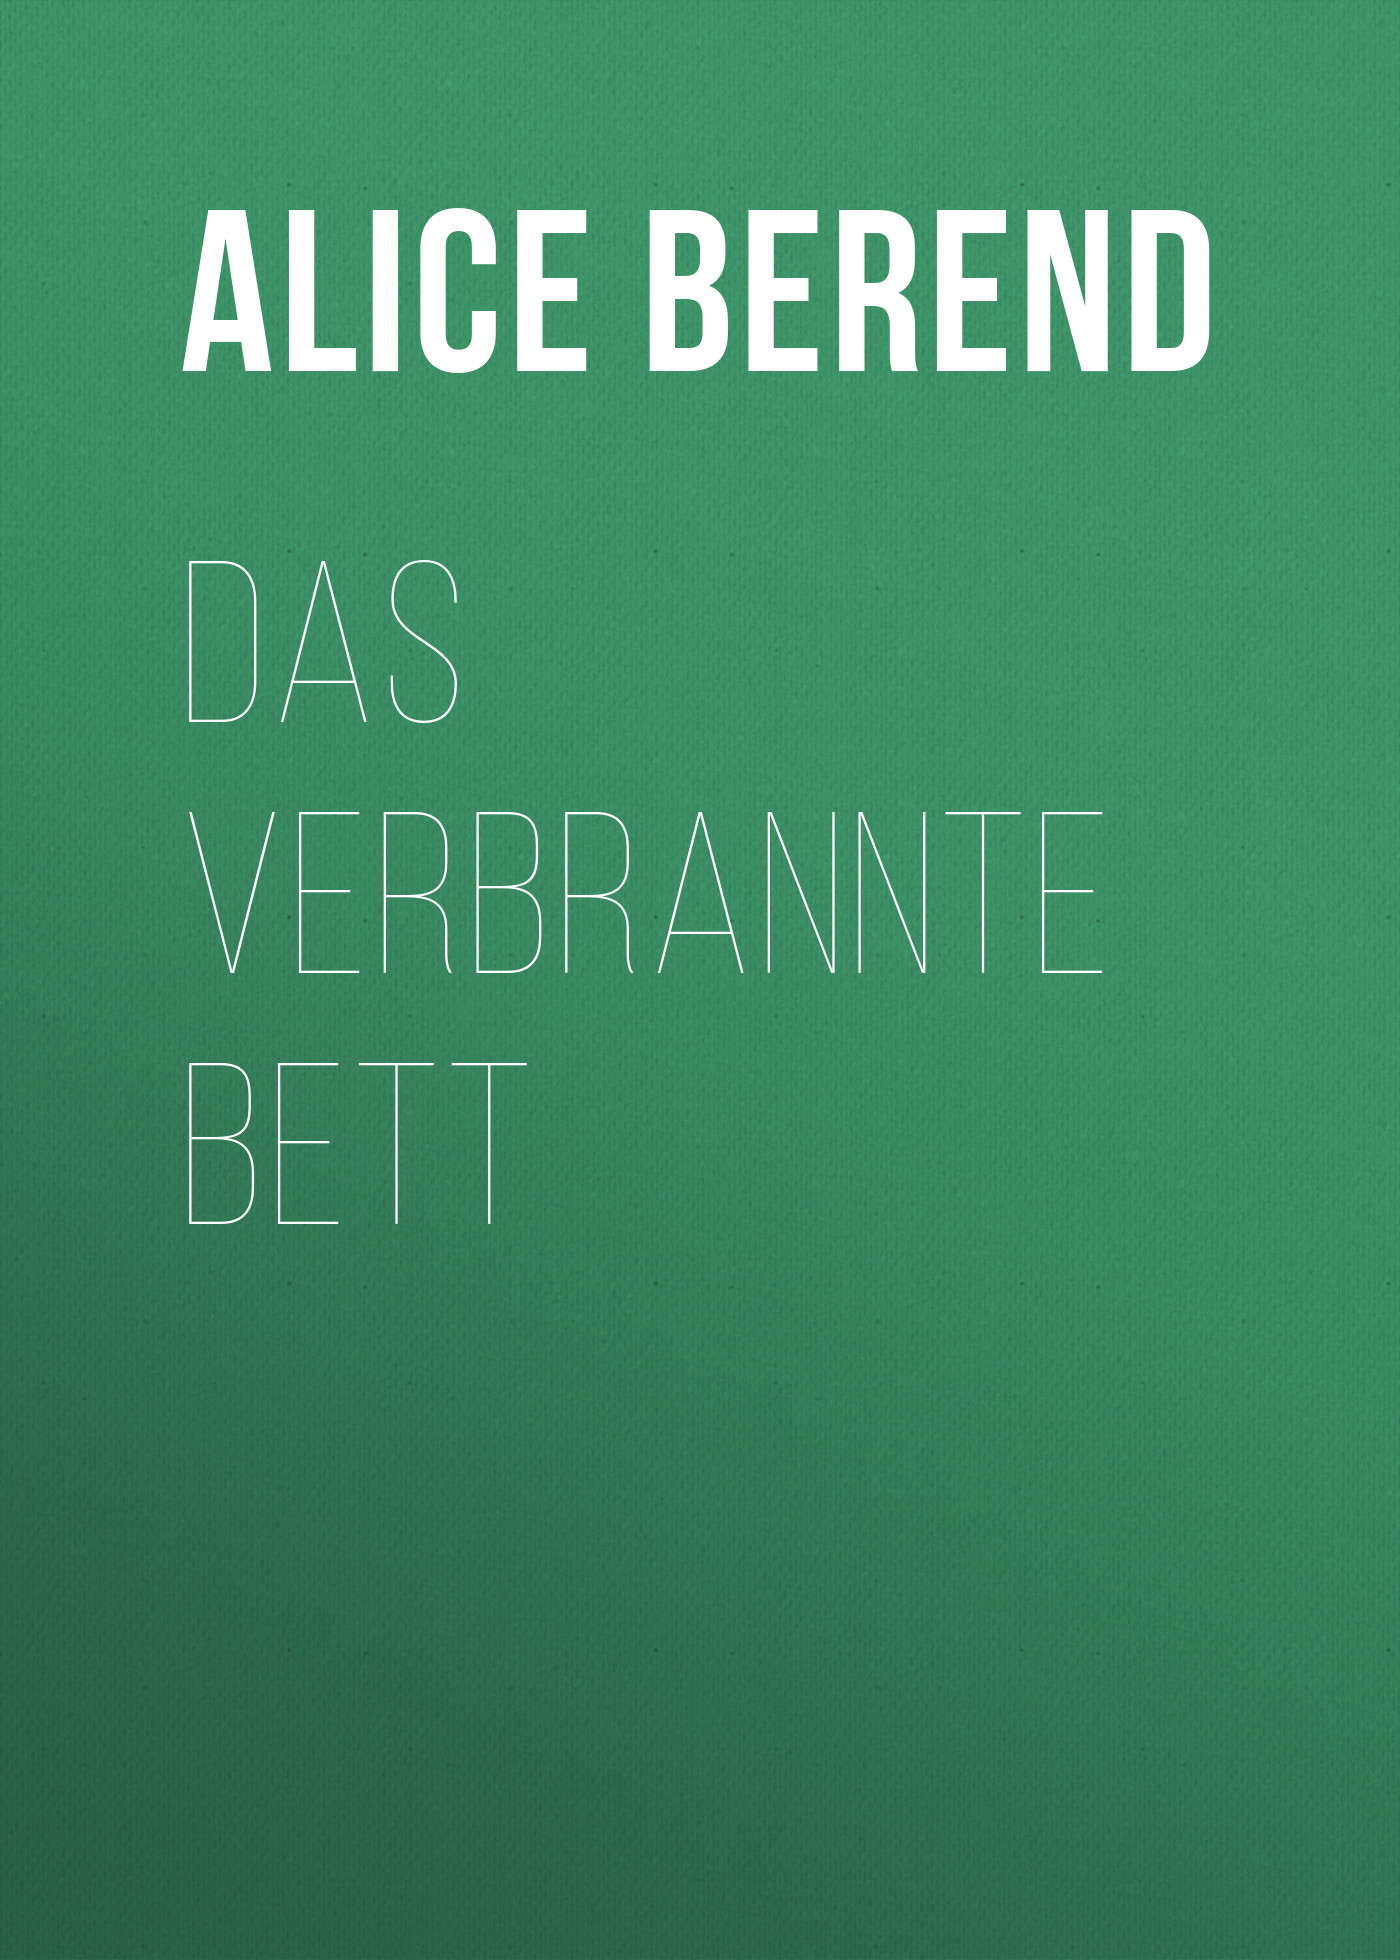 Книга Das verbrannte Bett из серии , созданная Alice Berend, может относится к жанру Зарубежная классика. Стоимость электронной книги Das verbrannte Bett с идентификатором 48632908 составляет 0 руб.